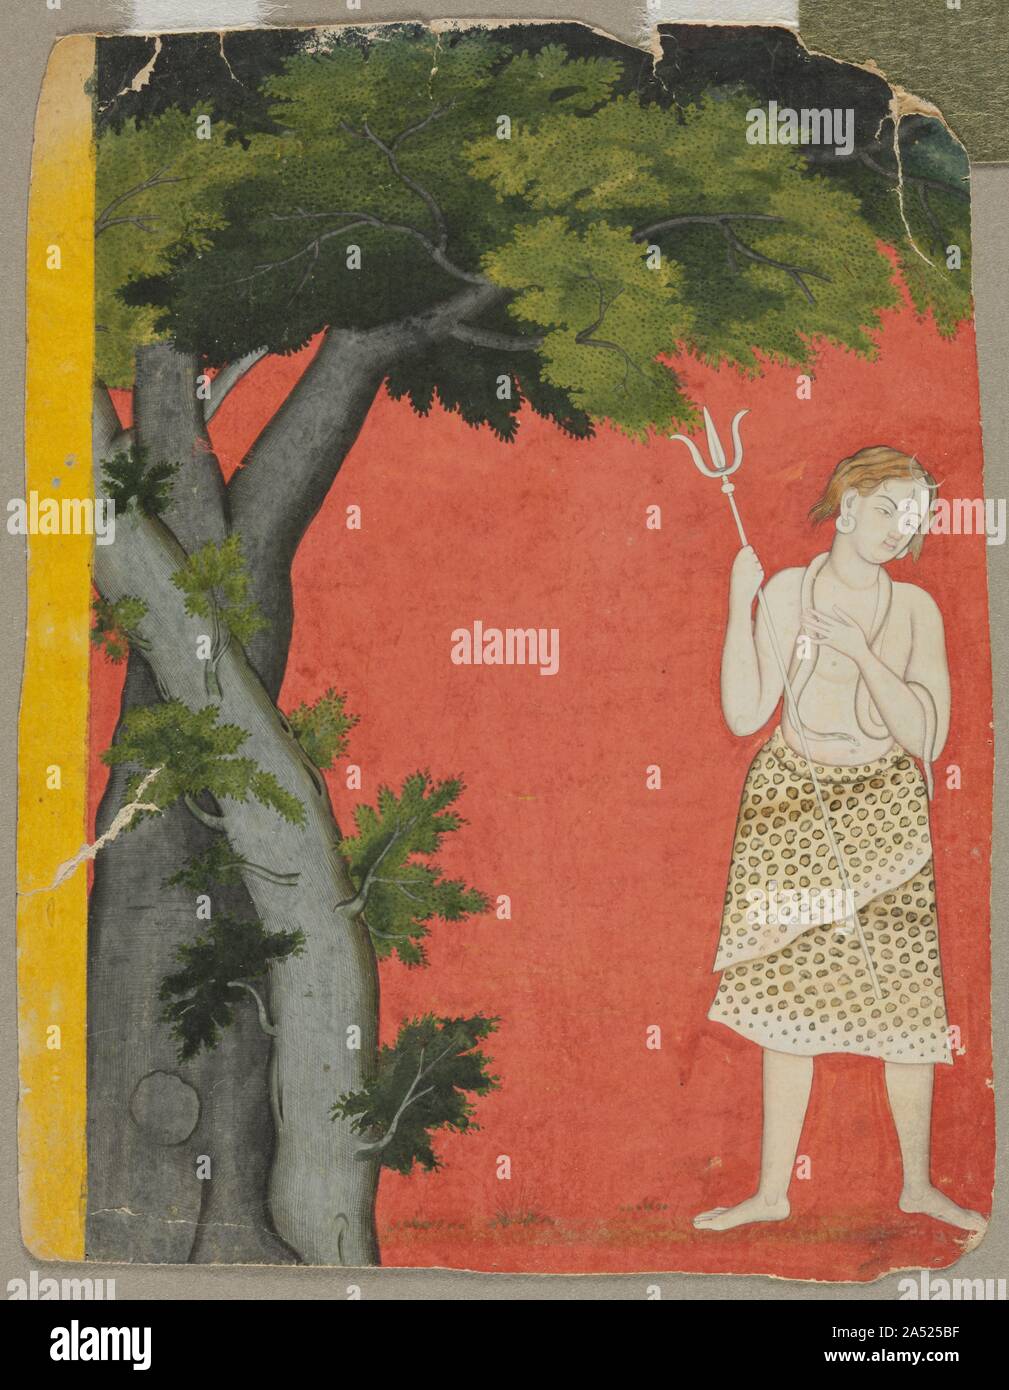 Shiva sous les arbres, c. 1780. Coupé d'une grande composition, ce fragment montre le dieu Shiva qui est tombé à terre. Il me semble un abord facile malgré son corps blanc, le serpent autour de son cou, son troisième œil, d'armes nucléaires Trident, animal-peau vêtement, et le croissant de lune à son front. En fonction d'un fond rouge, il se tient sous deux arbres de l'ombre qui font de sa manifestation sur terre crédible. Un arbre est entouré autour de l'autre, ce qui suggère la métaphore, l'amour physique Shiva semble désir avec nostalgie. Banque D'Images